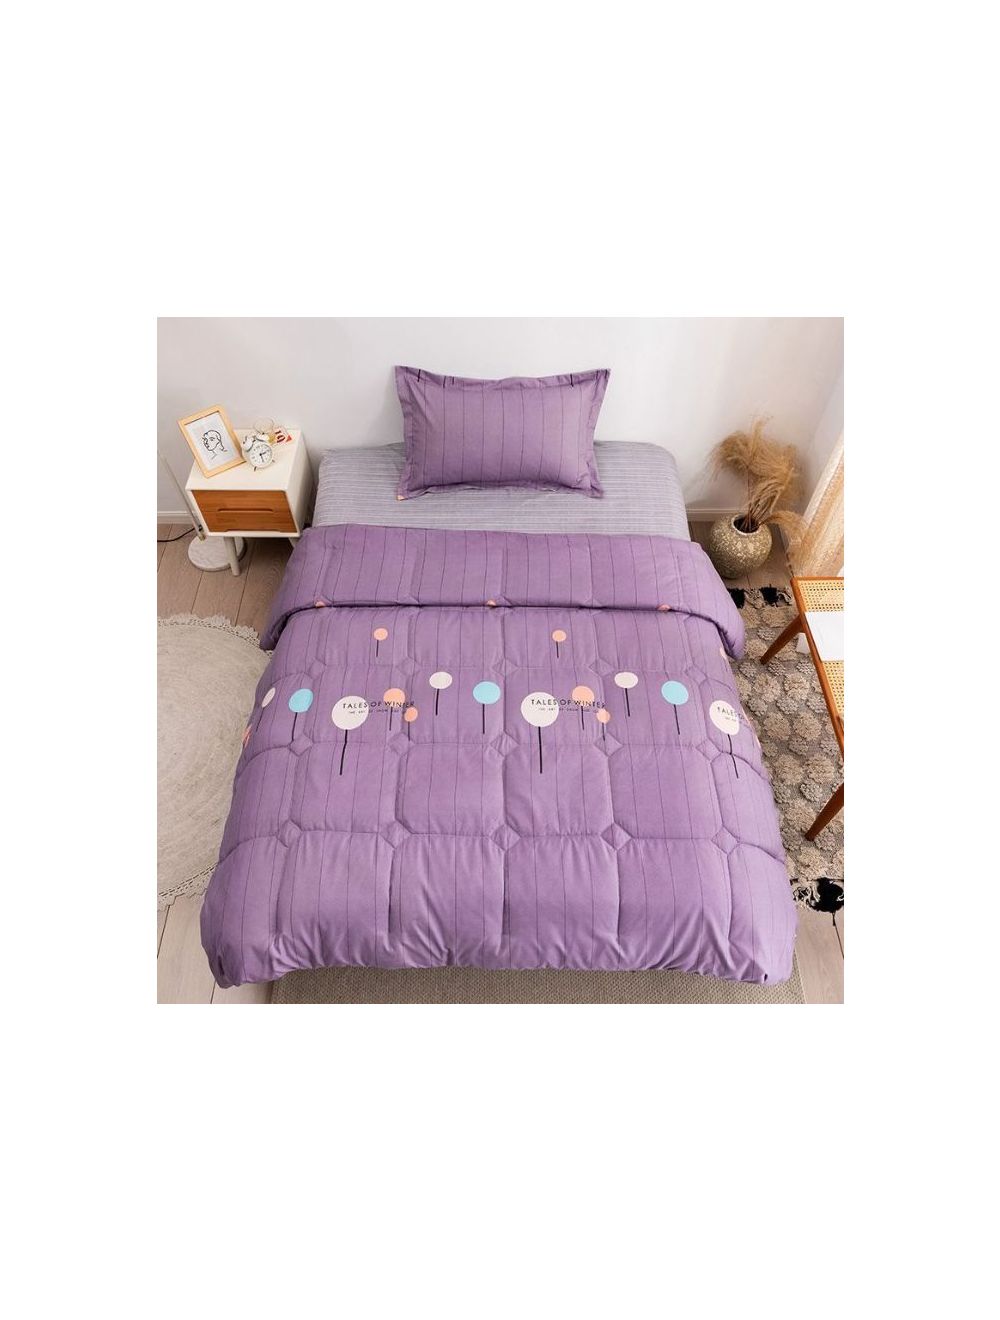 Rishahome 3 Piece Single Size Comforter Set Microfiber Multicolour 150x200cm-LHUCS0003